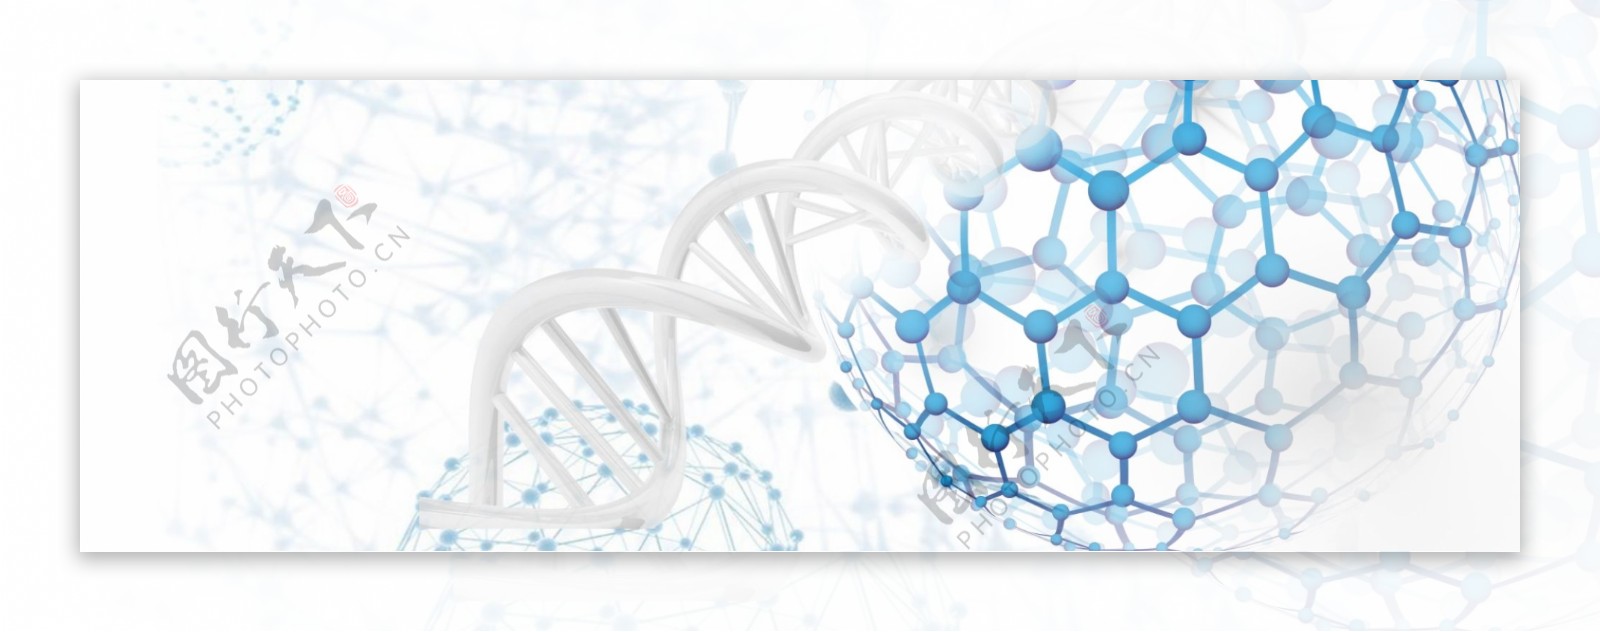 生物基因DNA